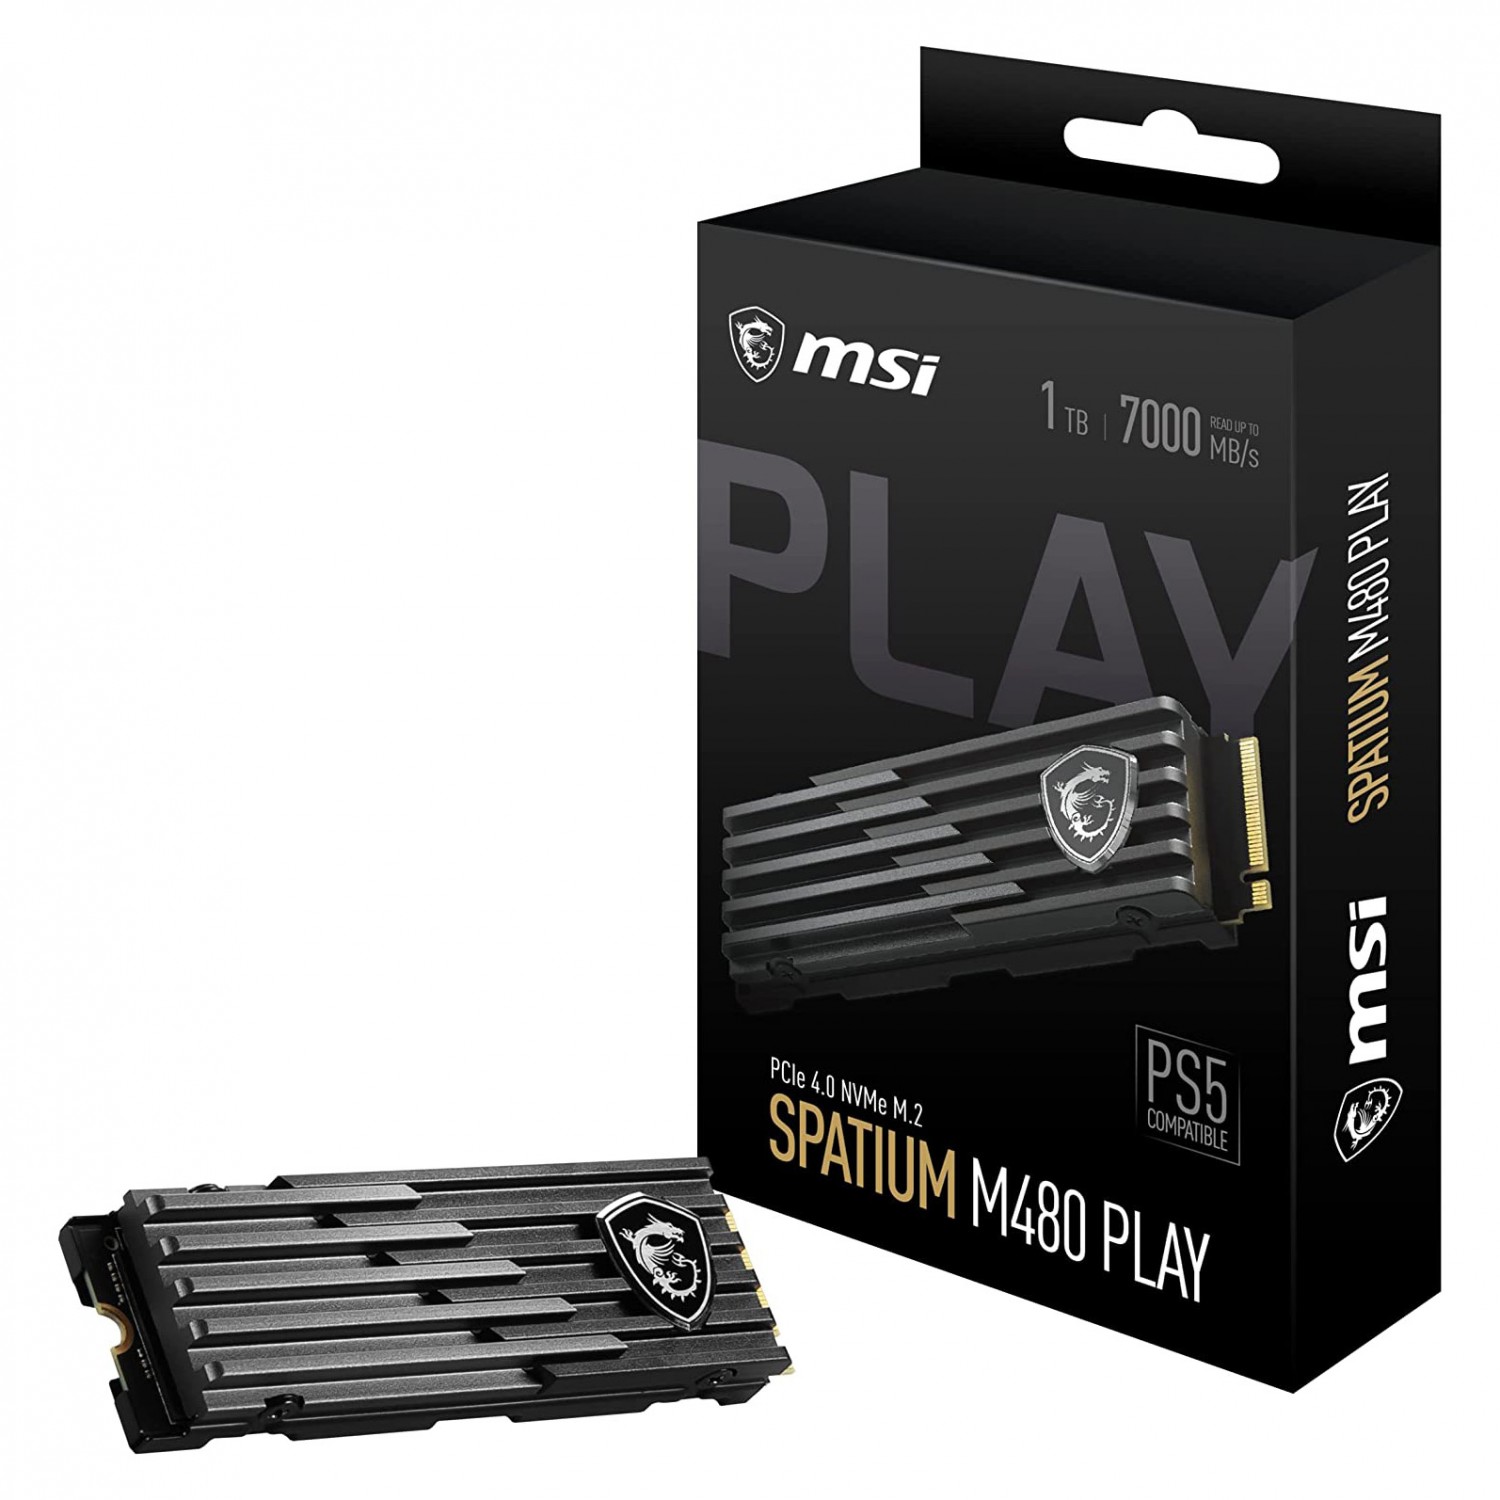 حافظه اس اس دی MSI Spatium M480 Play 1TB